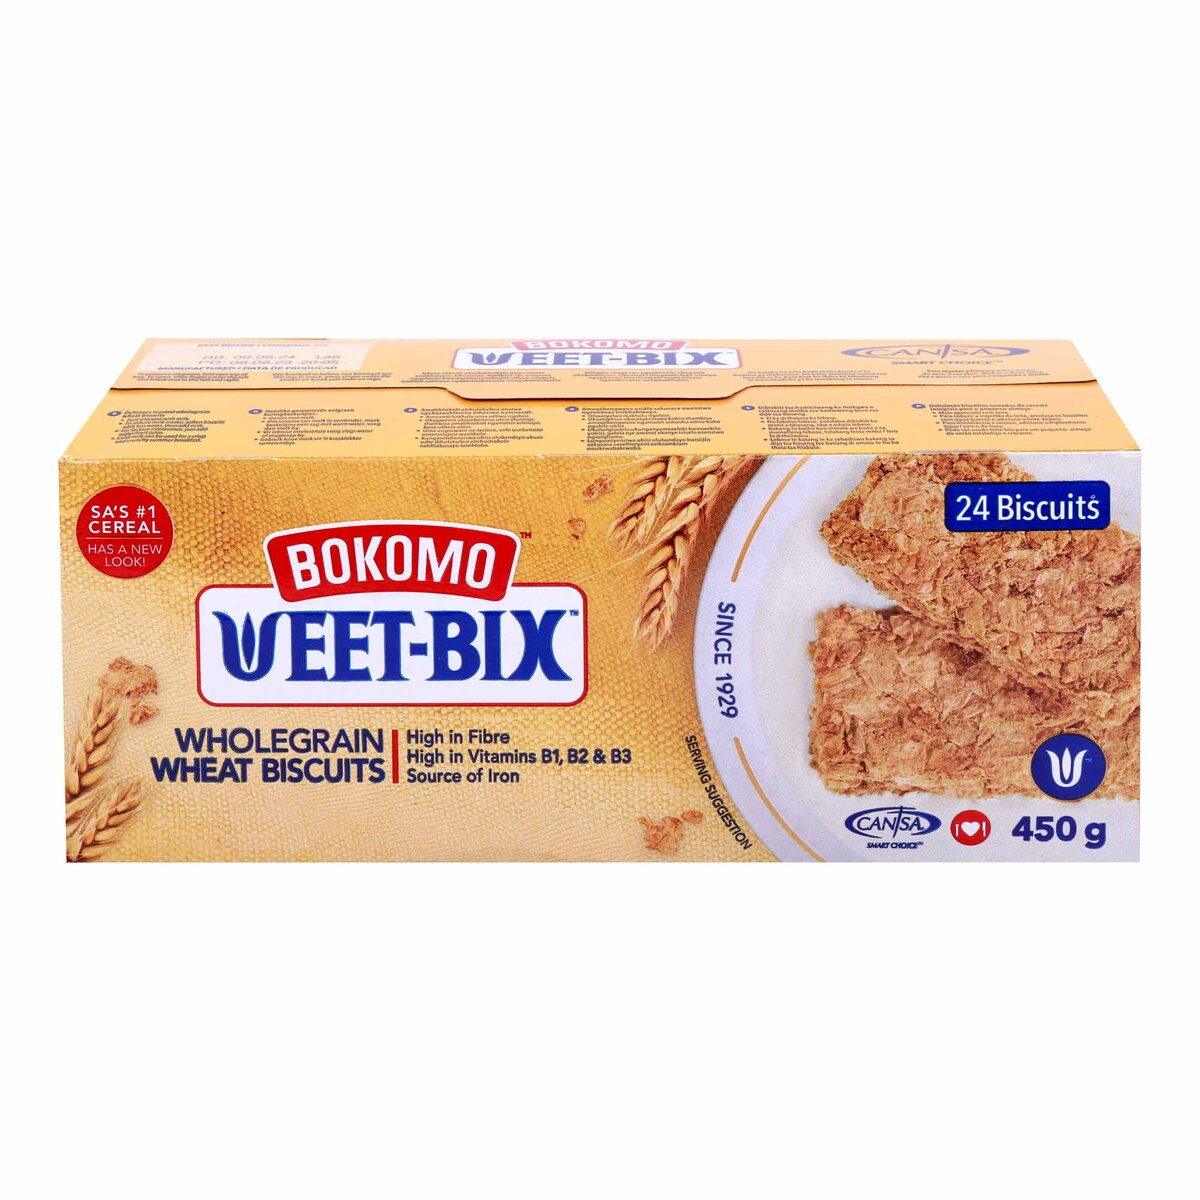 Bokomo Weetbix Wholegrain Wheat Biscuits 450 g